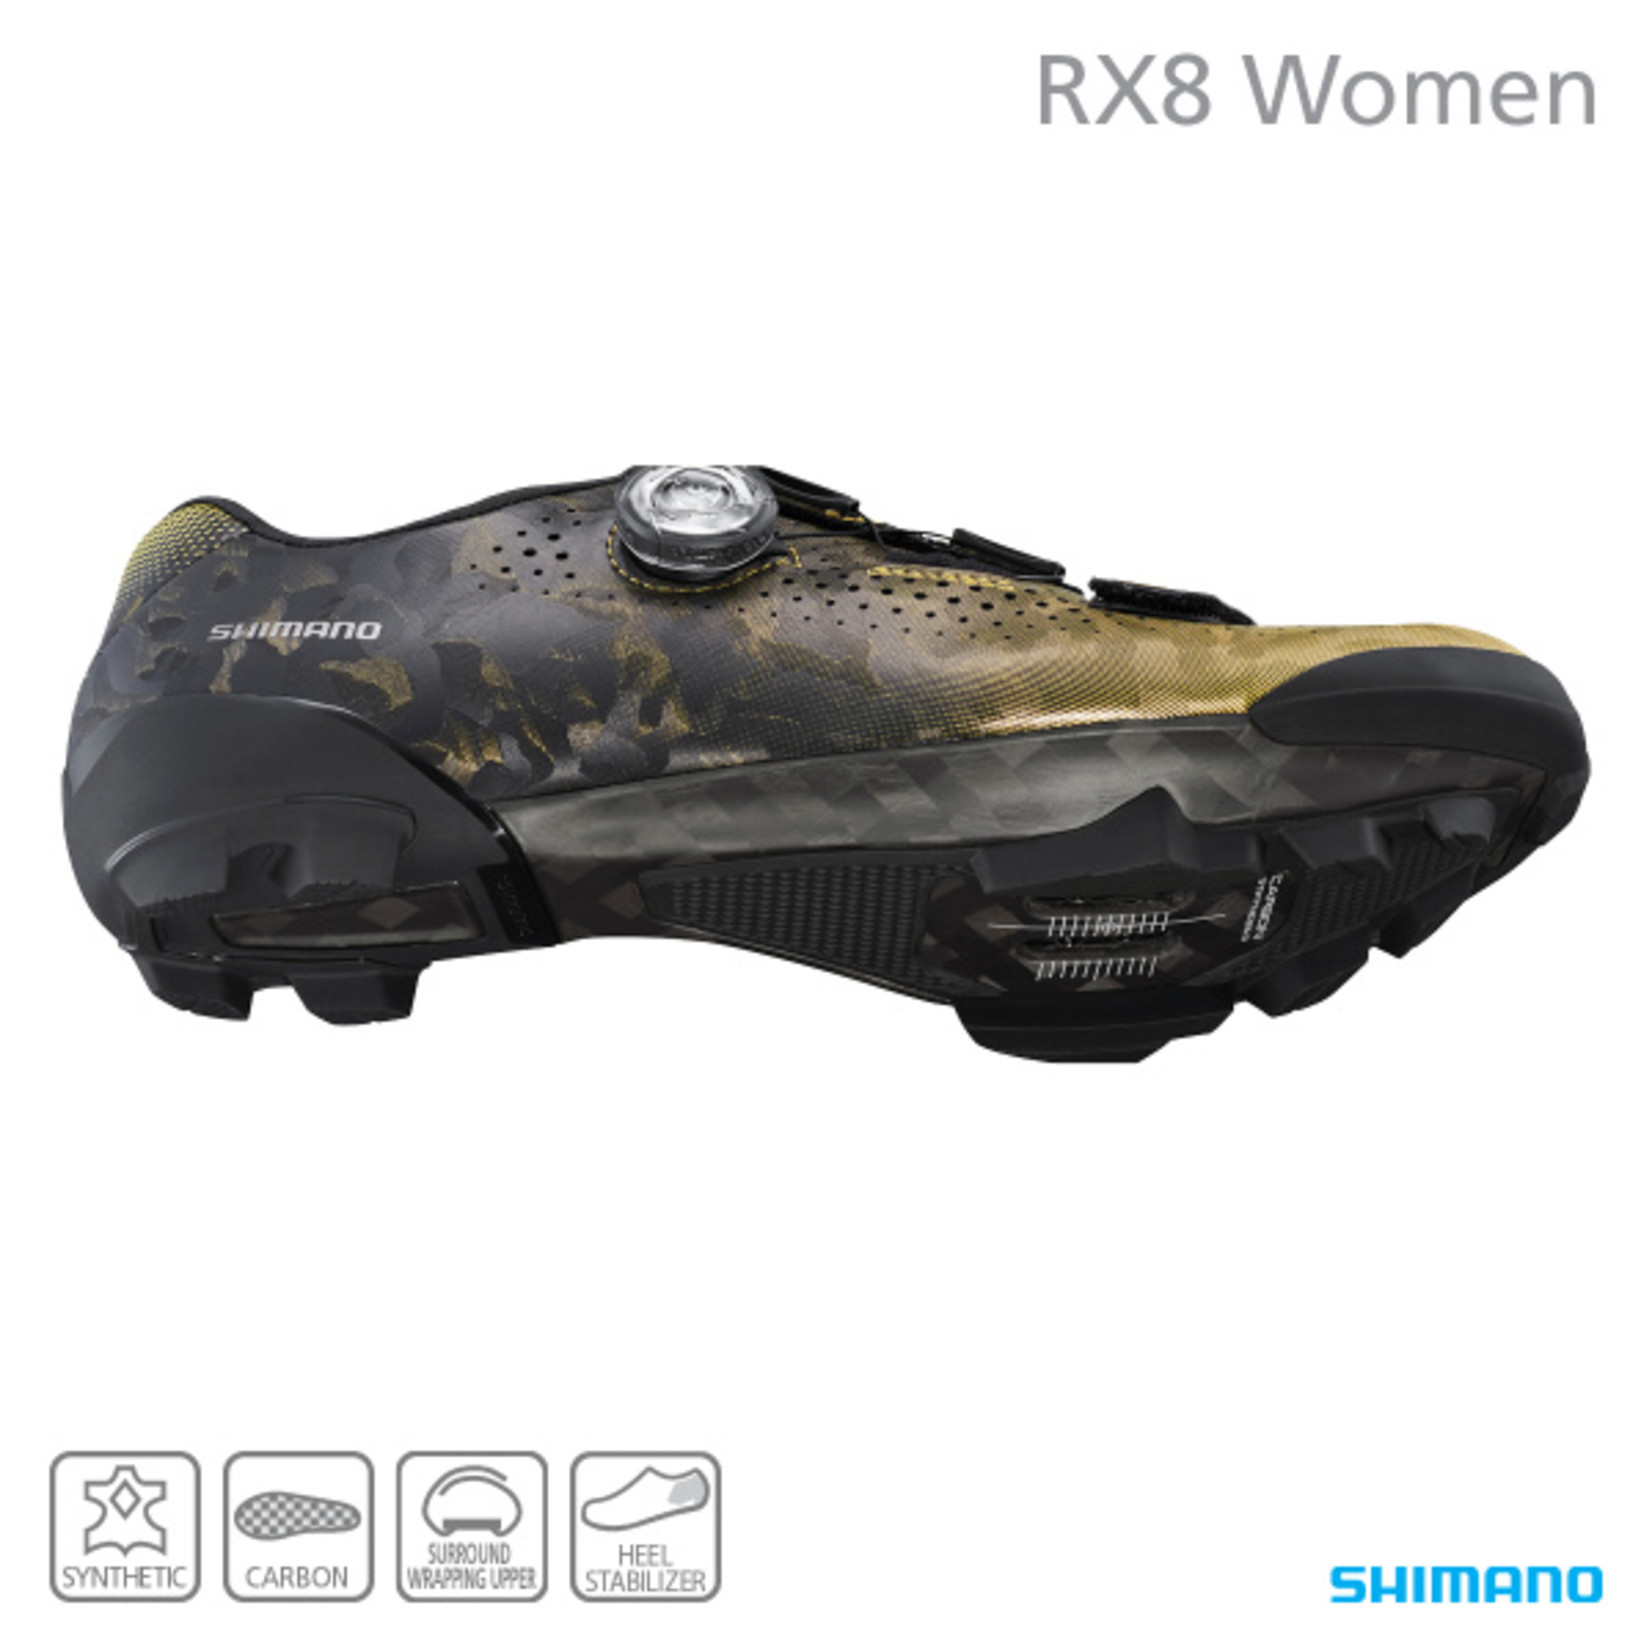 Shimano Shimano SH-RX800 TPU Women's SPD Gravel Bike/Cycling Racing Shoes